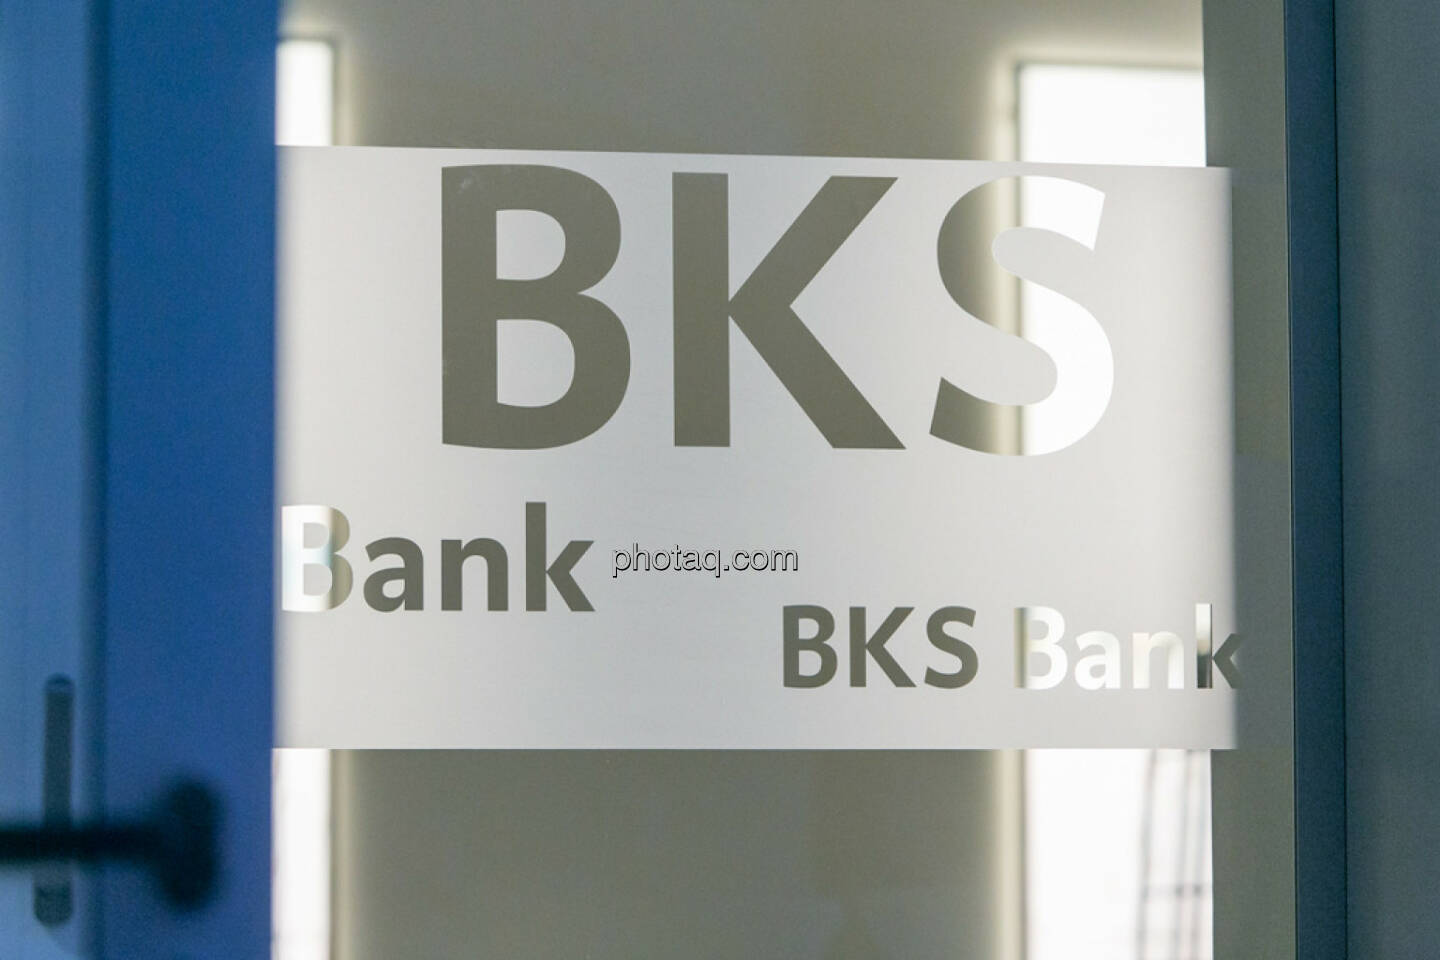 BSK Bank